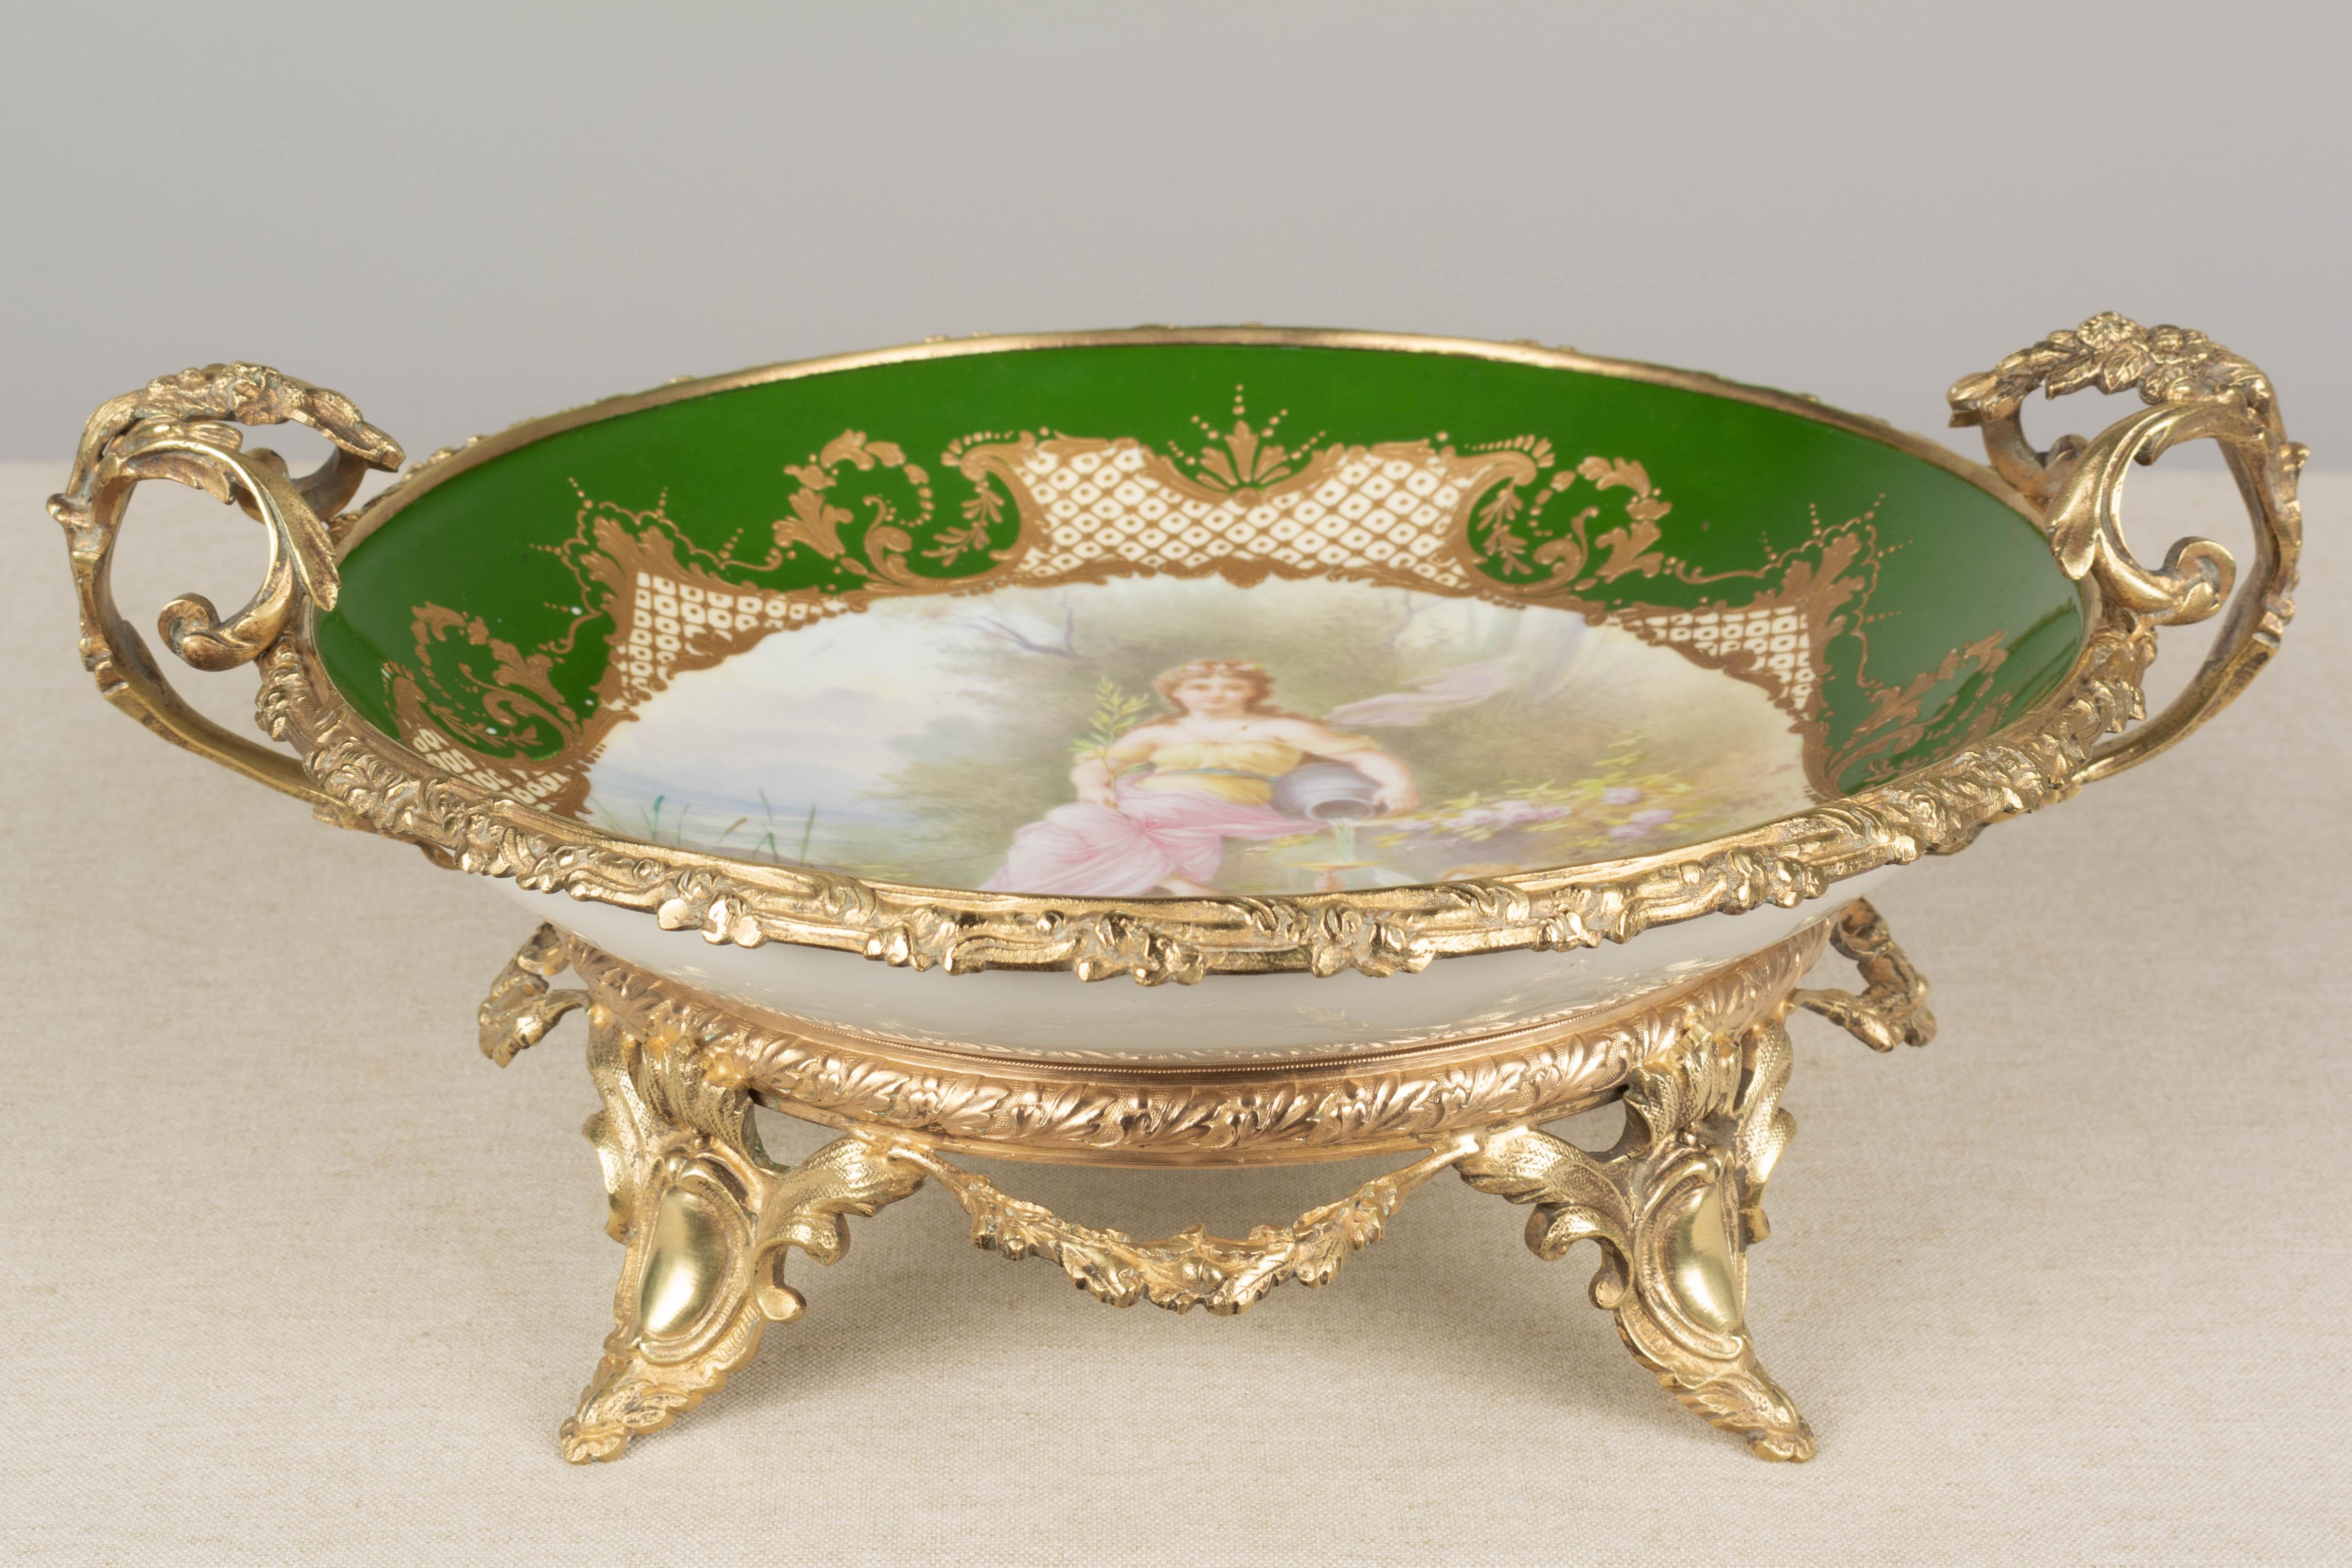 19th Century French Ormolu Sèvres Porcelain Centerpiece Bowl For Sale 8